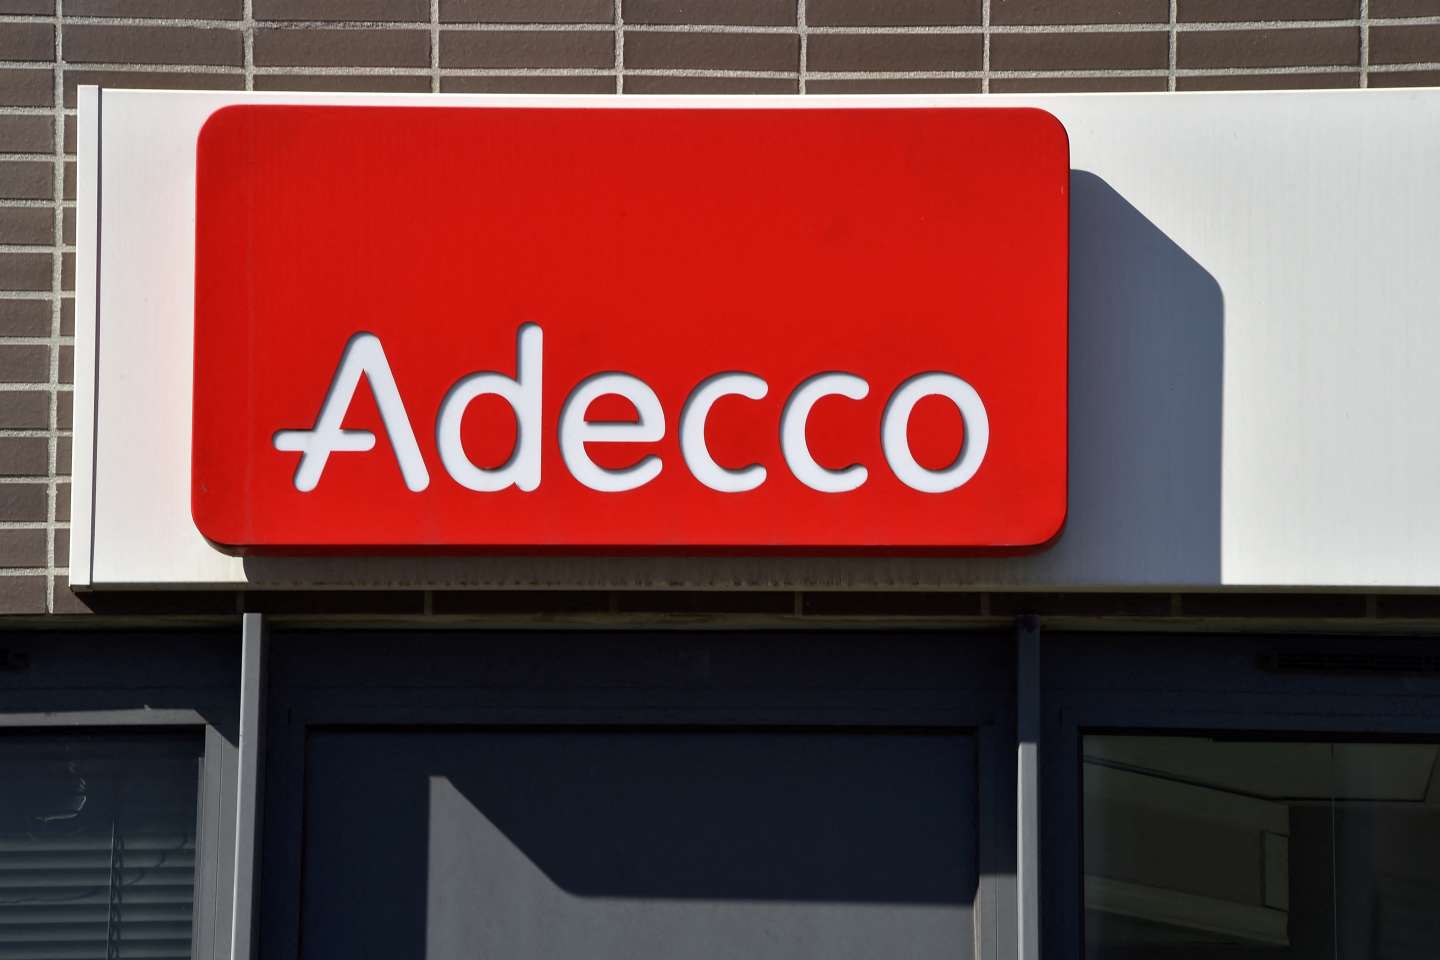 Adecco met en garde ses intérimaires sur une possible fuite de leurs données personnelles